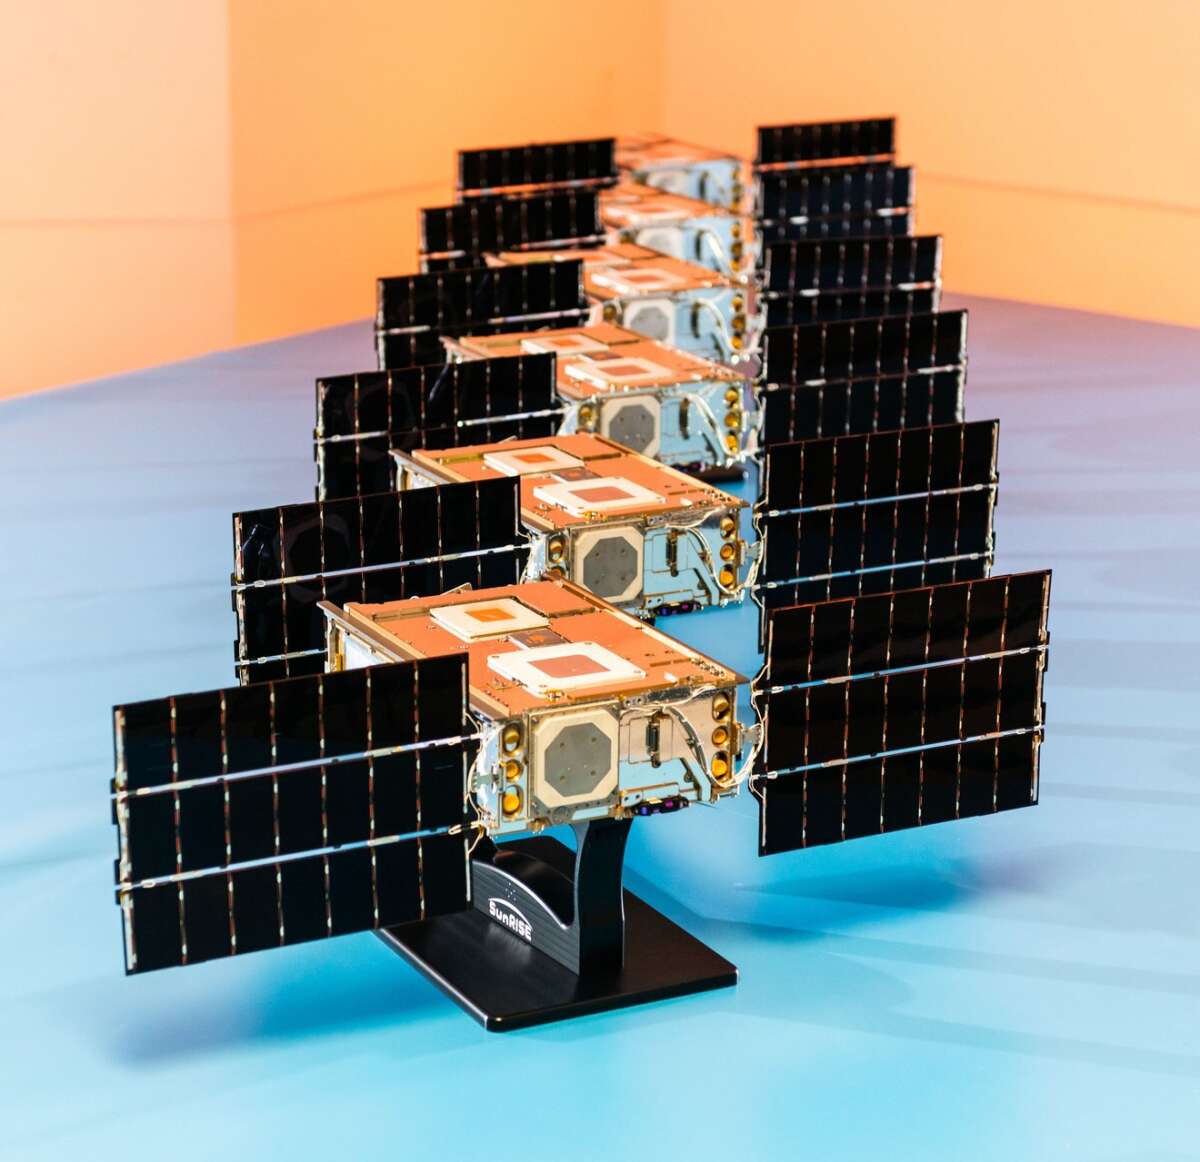 Шесть спутников НАСА готовы к миссиям изучения Солнца